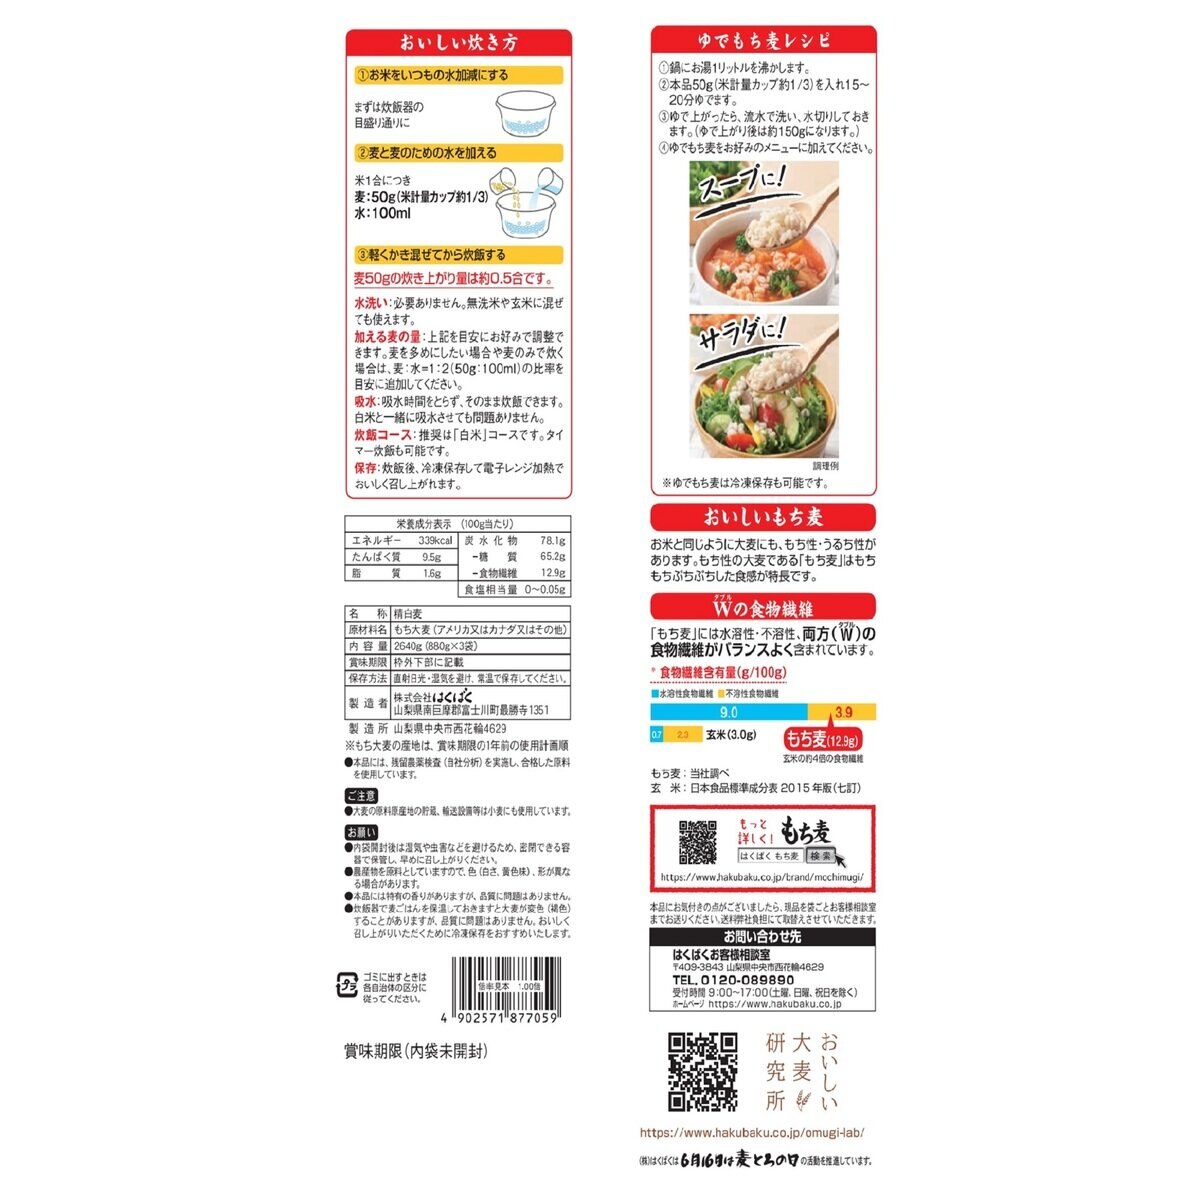 はくばく もち麦 (800g + 80g) x 3袋 | Costco Japan